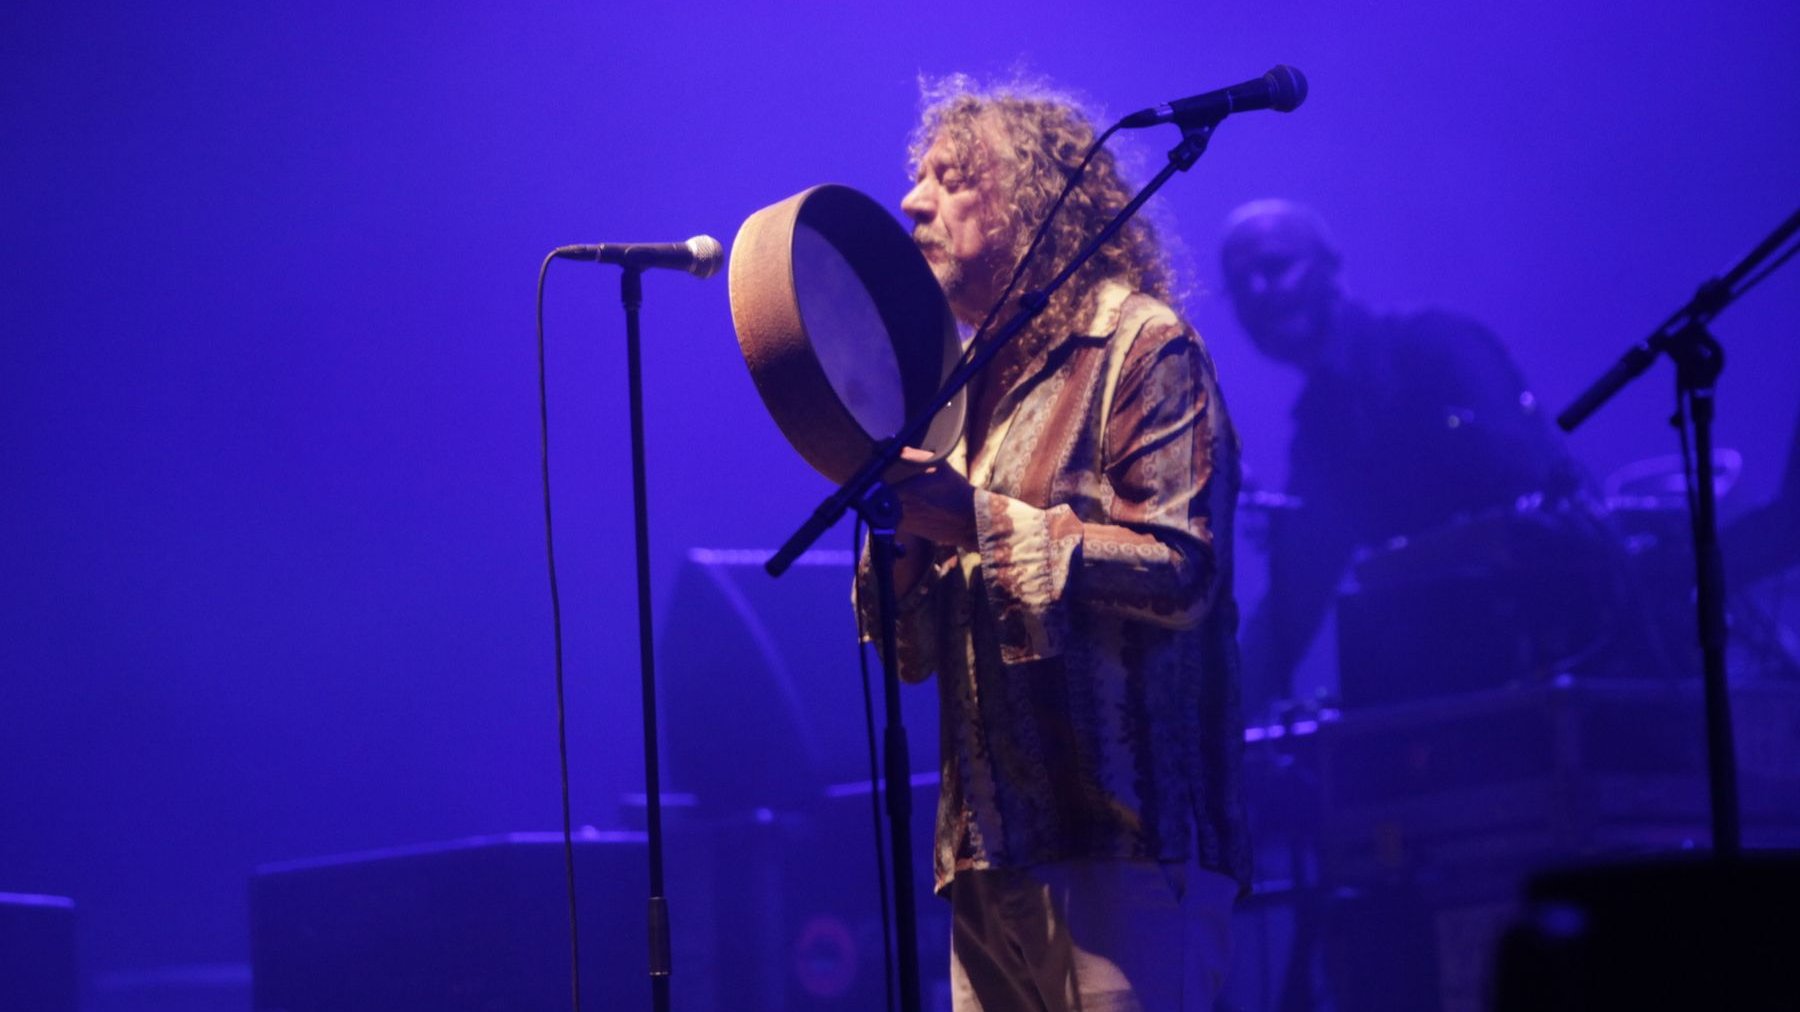 Il chantera même en amazigh! Extraordinaire Robert Plant, rappelé à la fin par le public qui ne voulait pas être arraché à ce rêve insensé. Monsieur, merci!
